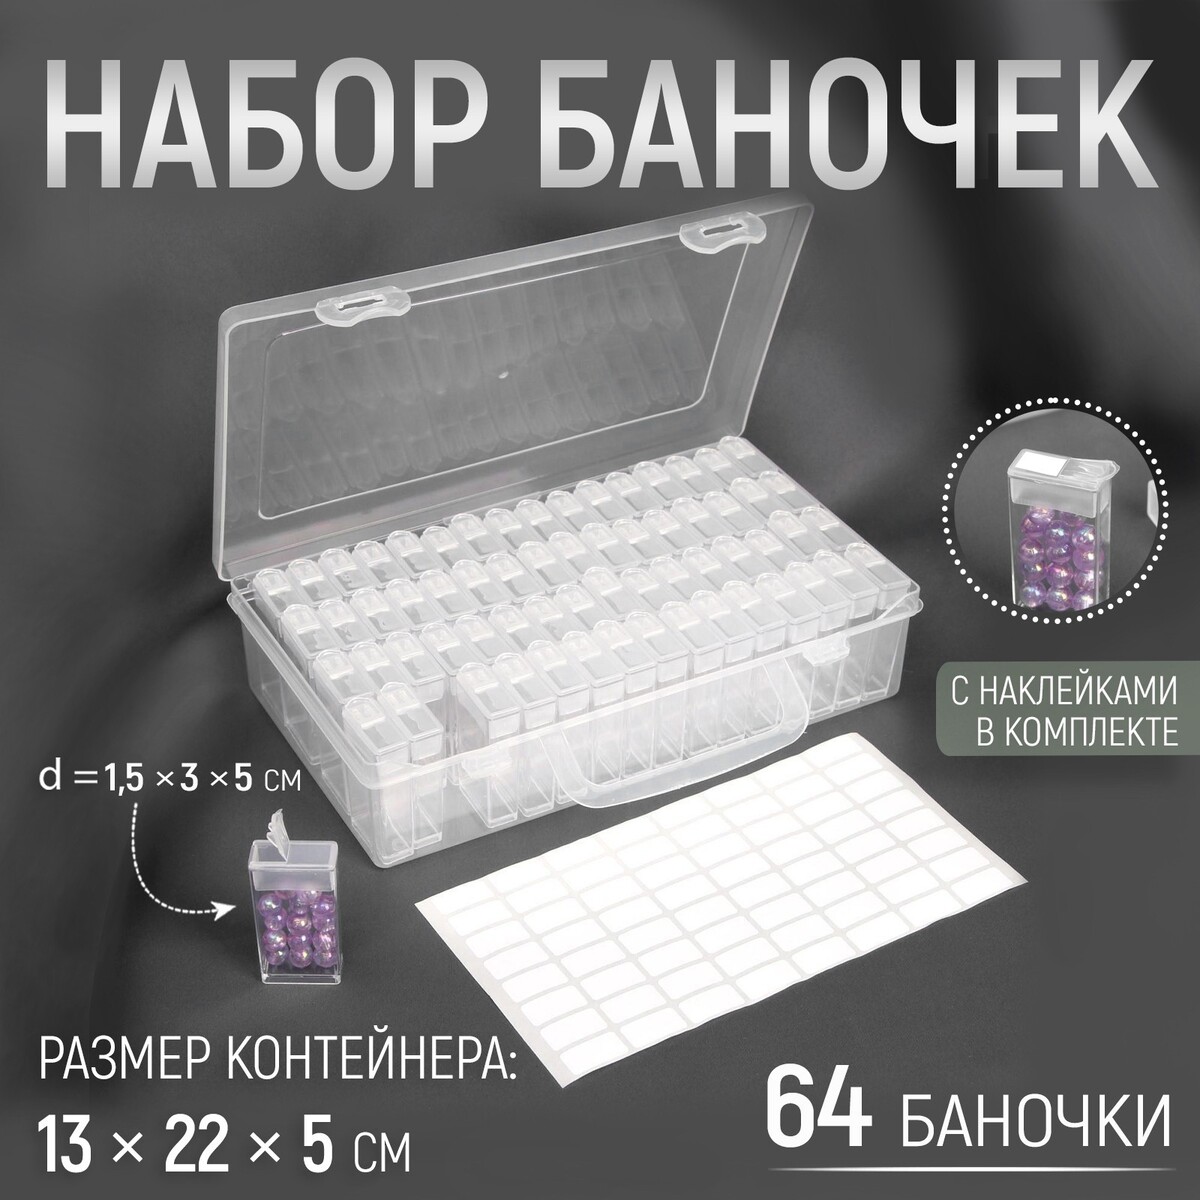 Набор баночек для рукоделия, 64 баночки, 1,5 × 3 × 5 см, в контейнере, 13 × 22 × 5 см, с наклейками, цвет прозрачный набор для детской лепки genio kids тесто пластилин 24 баночки